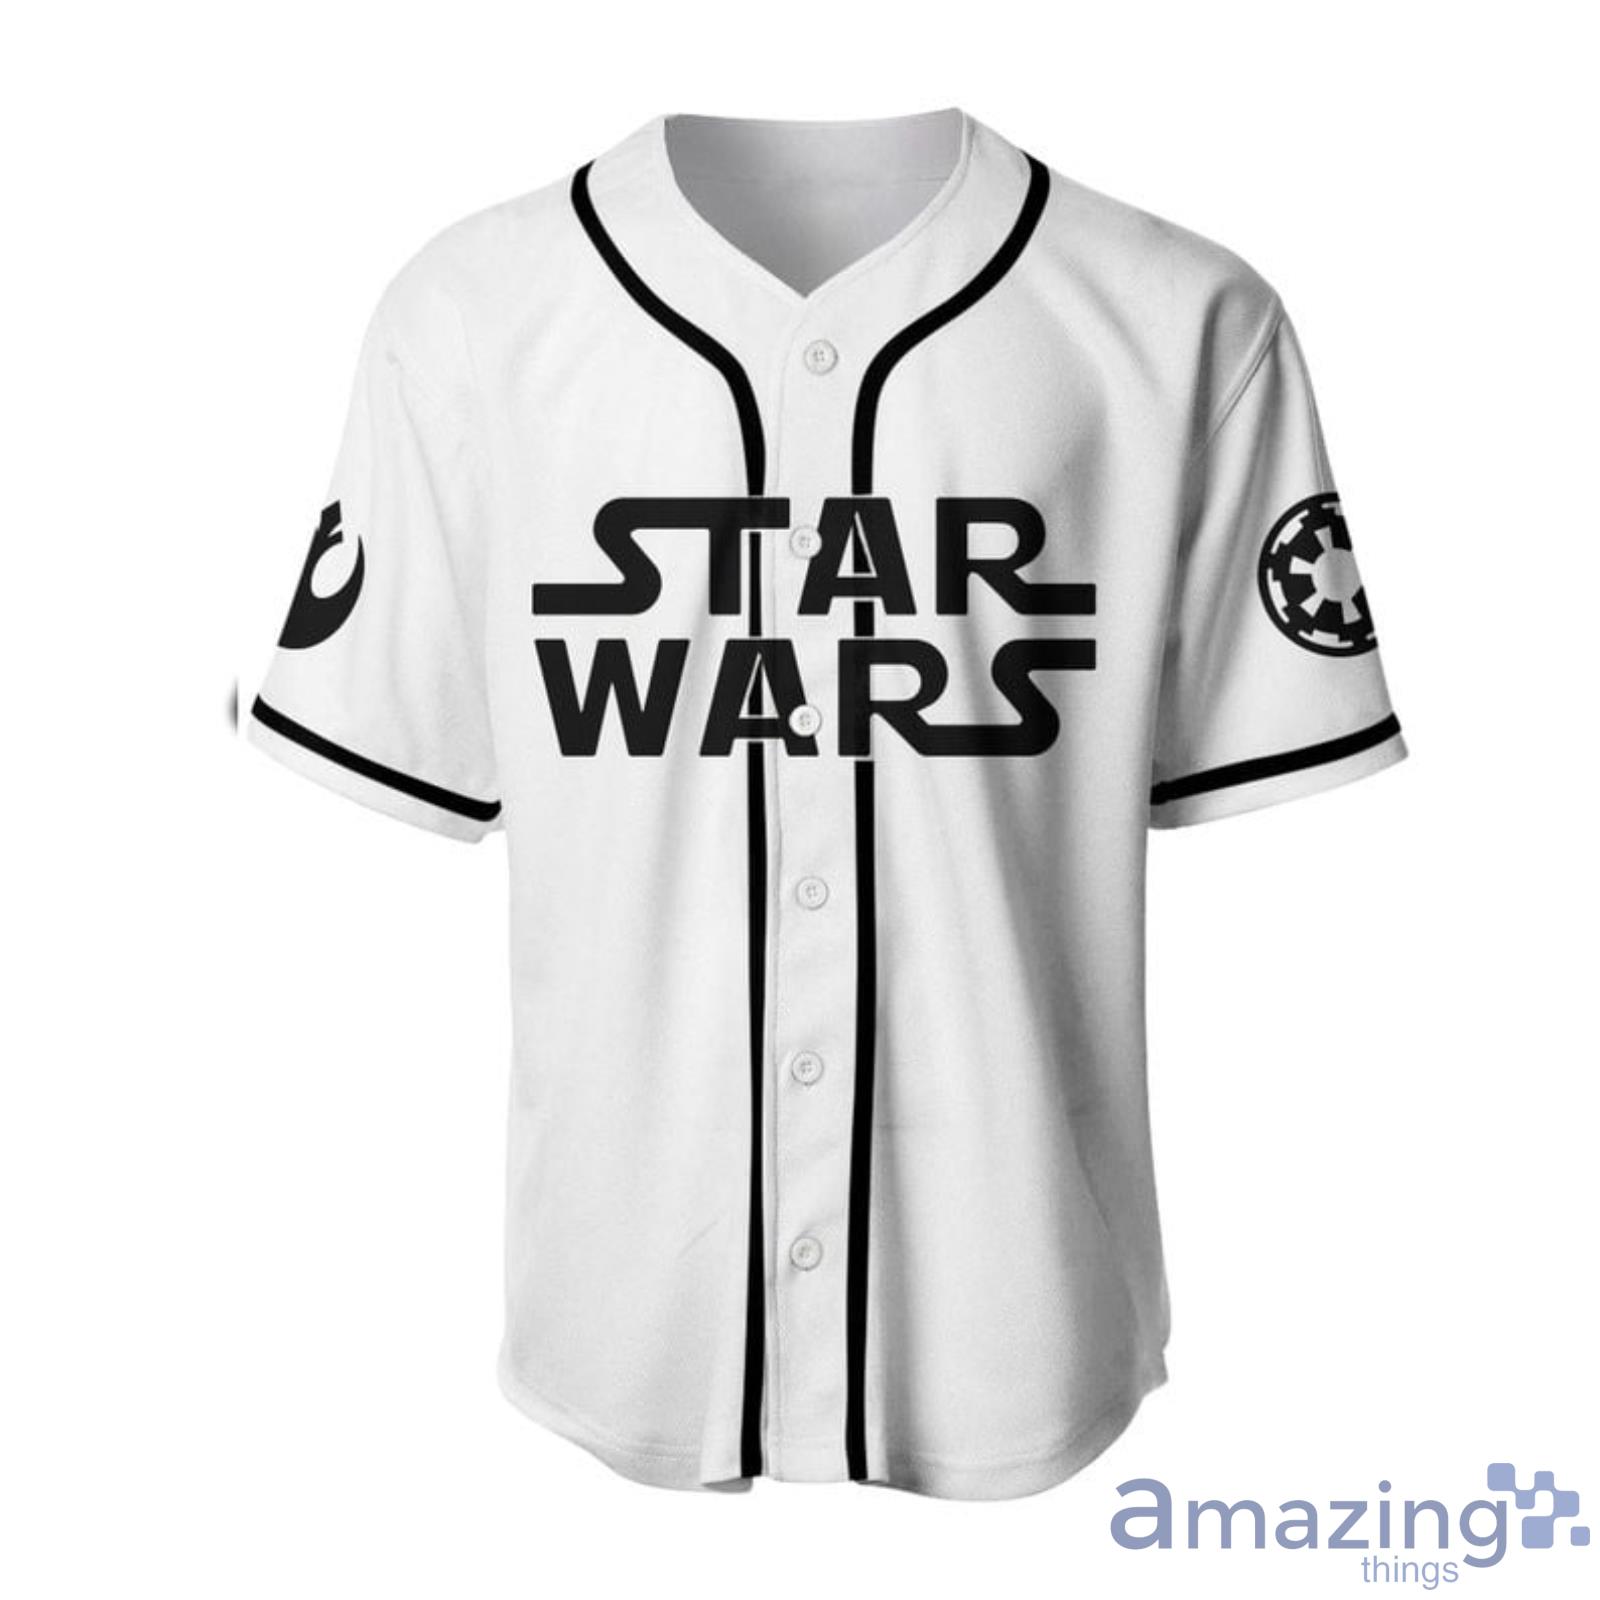 star wars baseball jersey